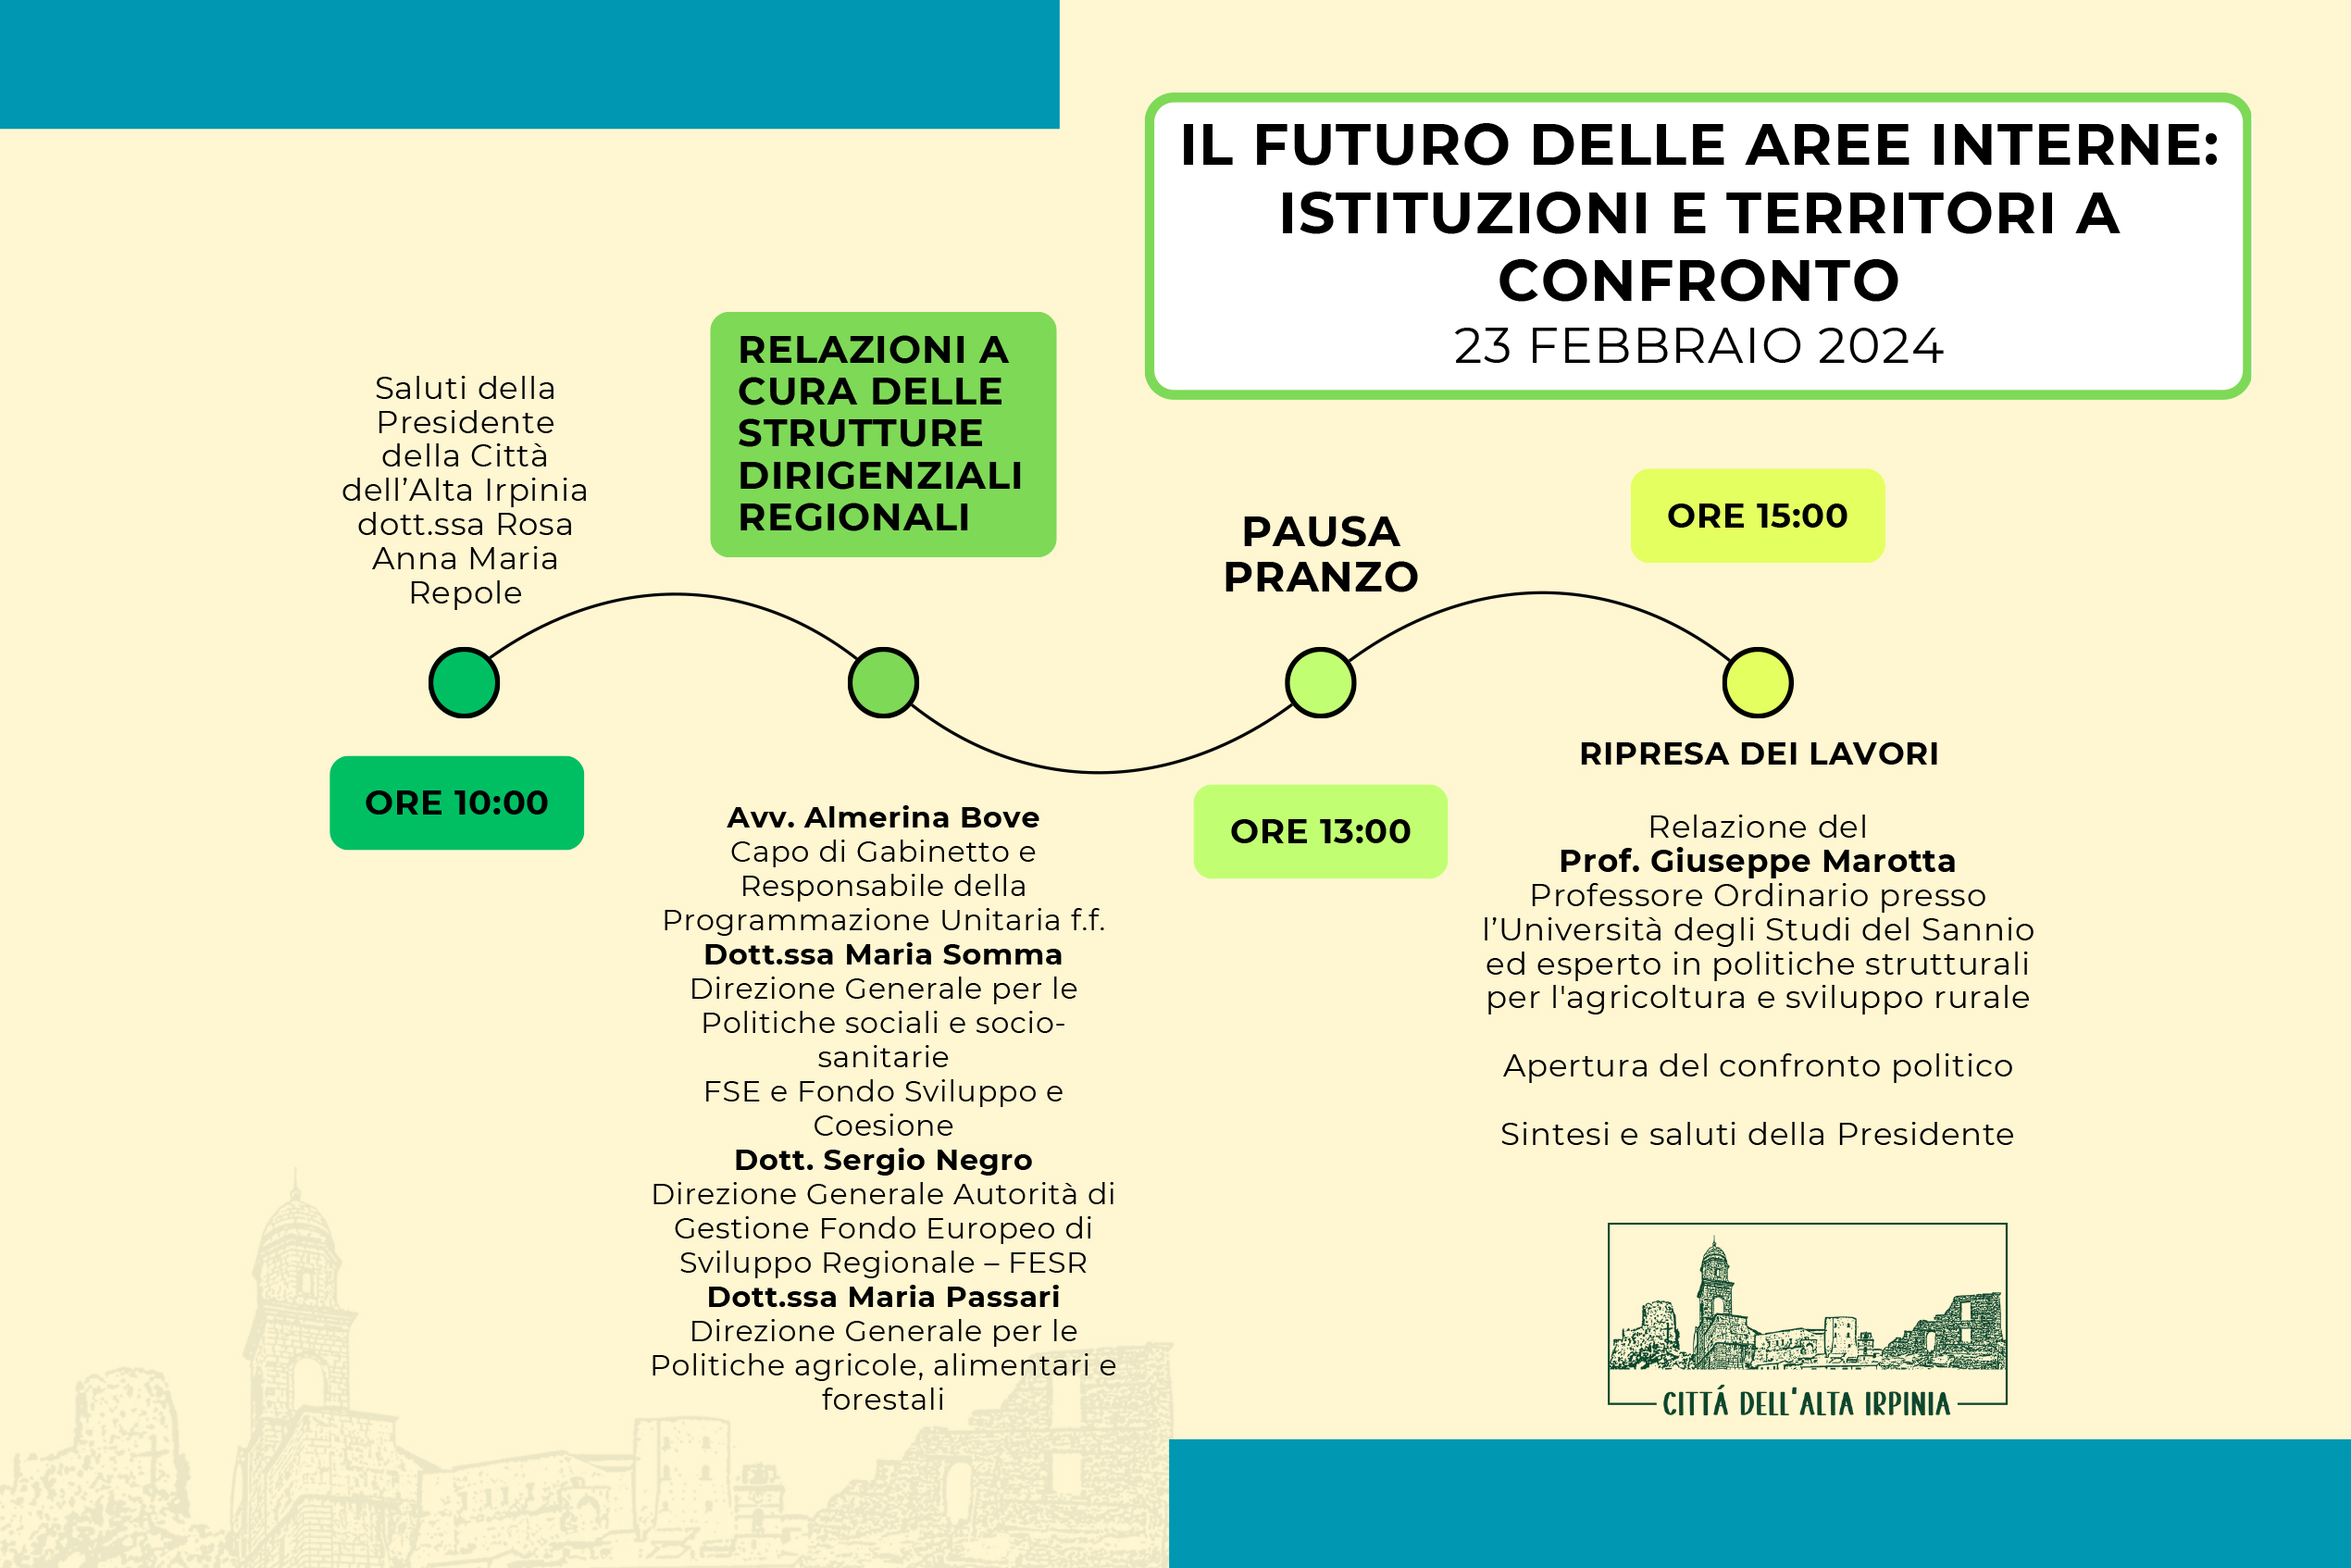 Caposele - Il futuro delle aree interne, istituzioni e territori a confronto in Campania